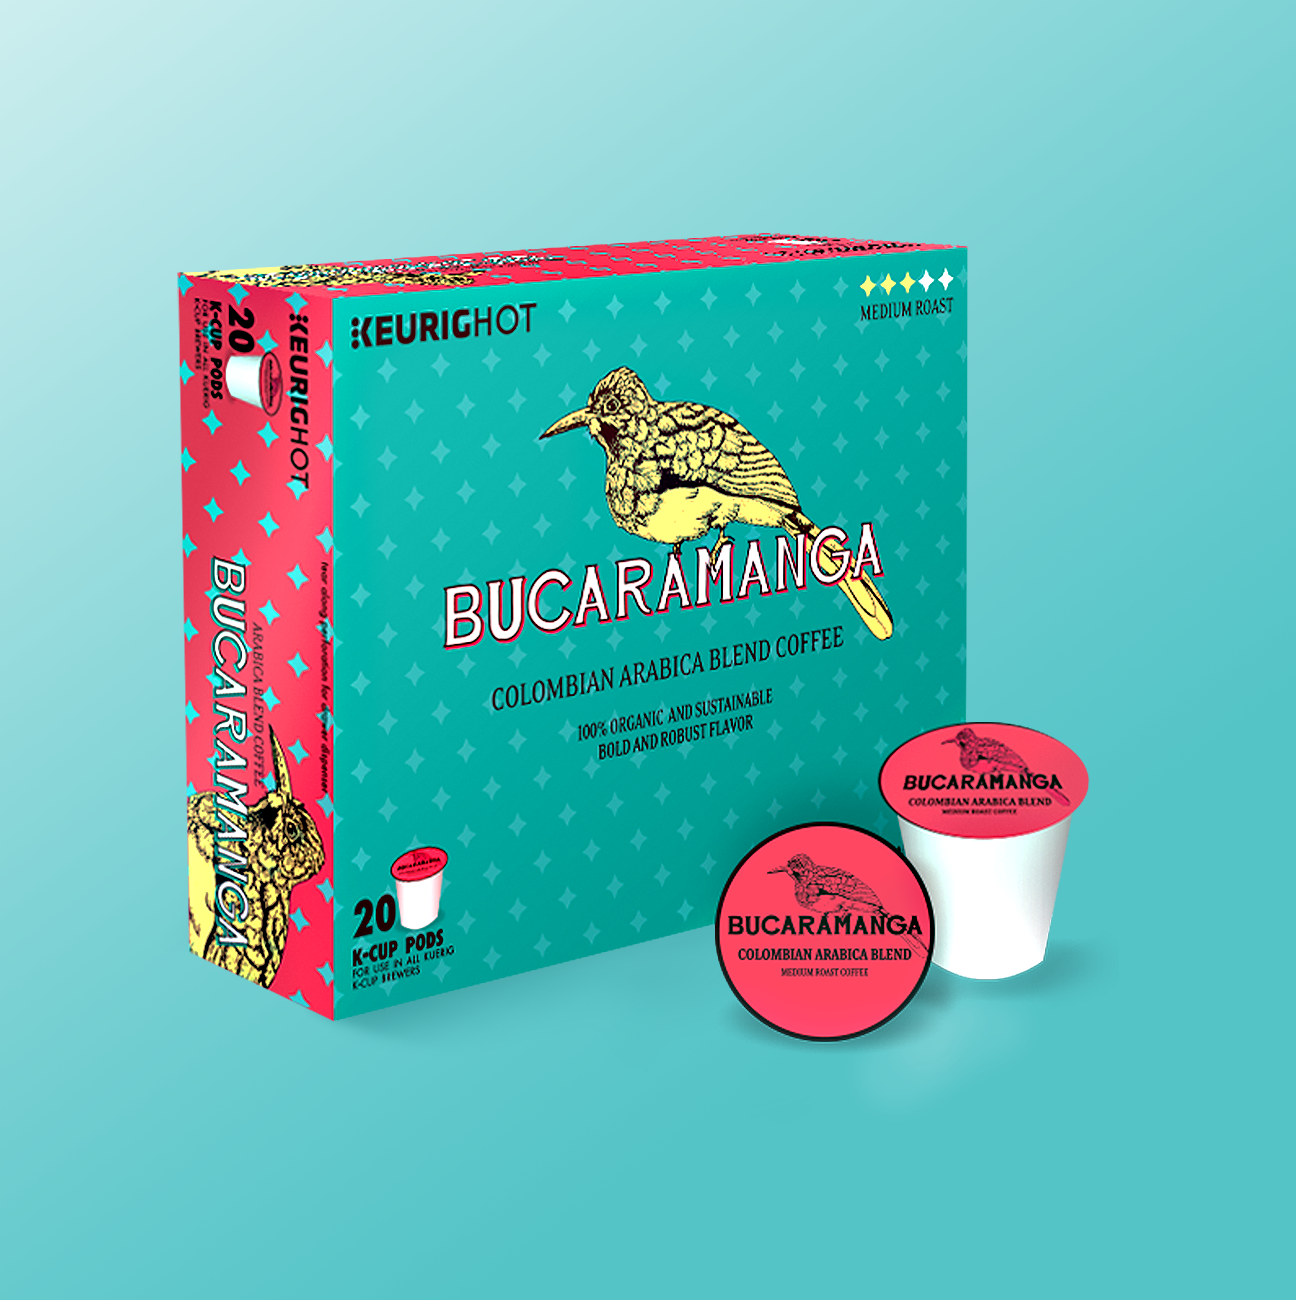 Bucaramanga Coffee Box Mockup